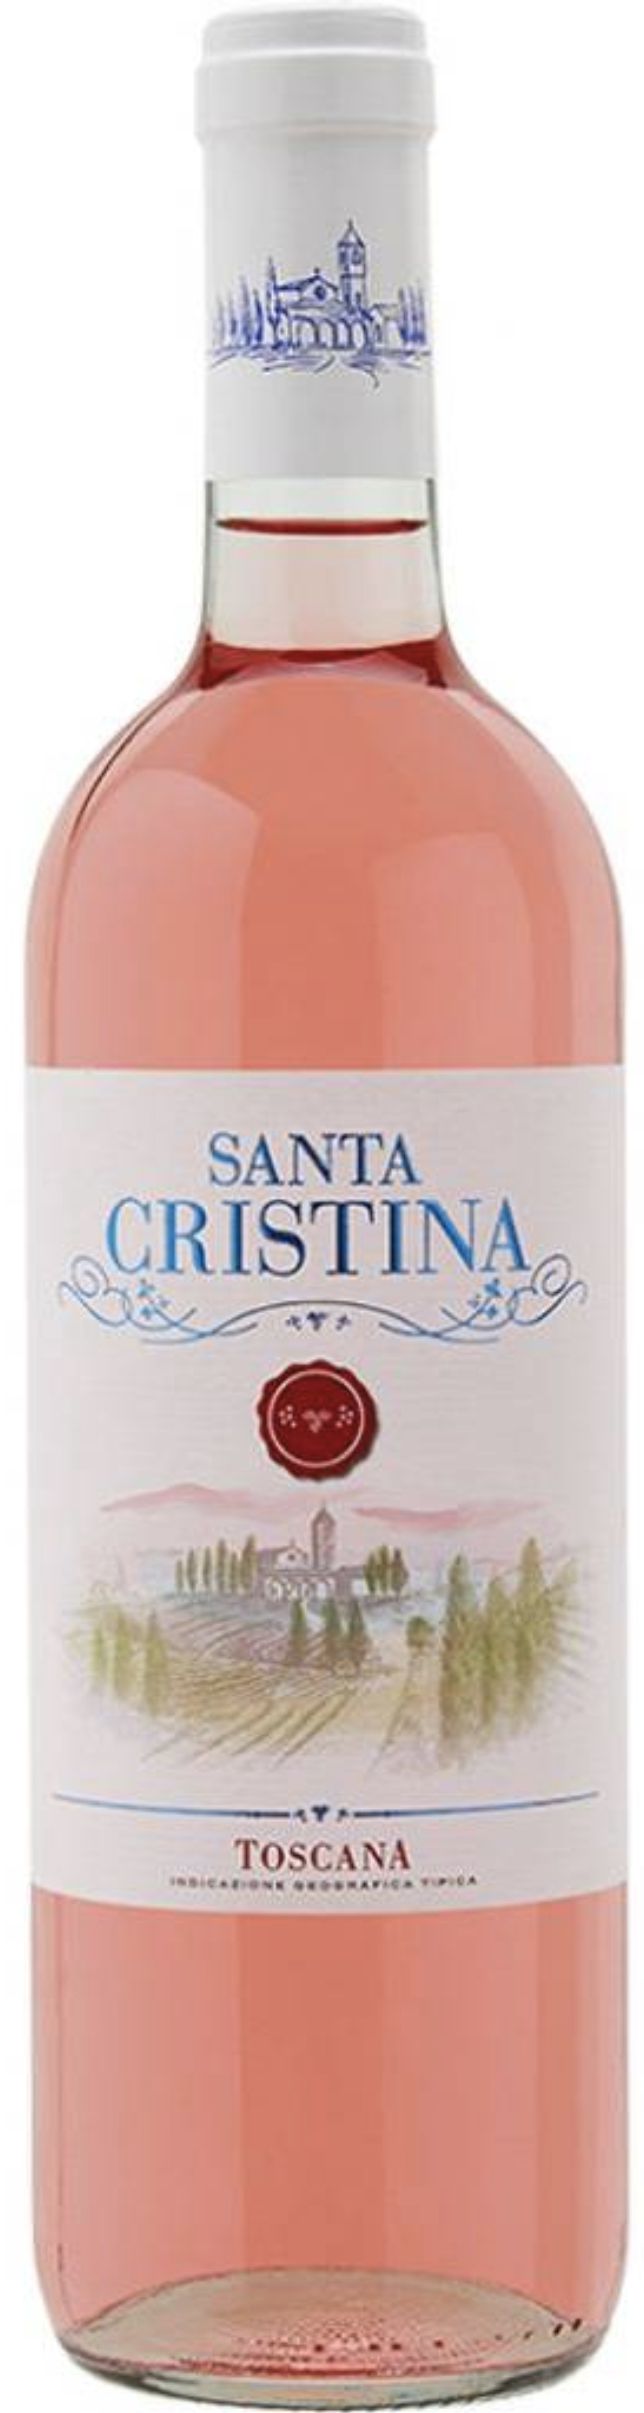 Санта Кристина Розато Тоскана ИГТ 2018 0.75л. розовое 11.5% Полусухое